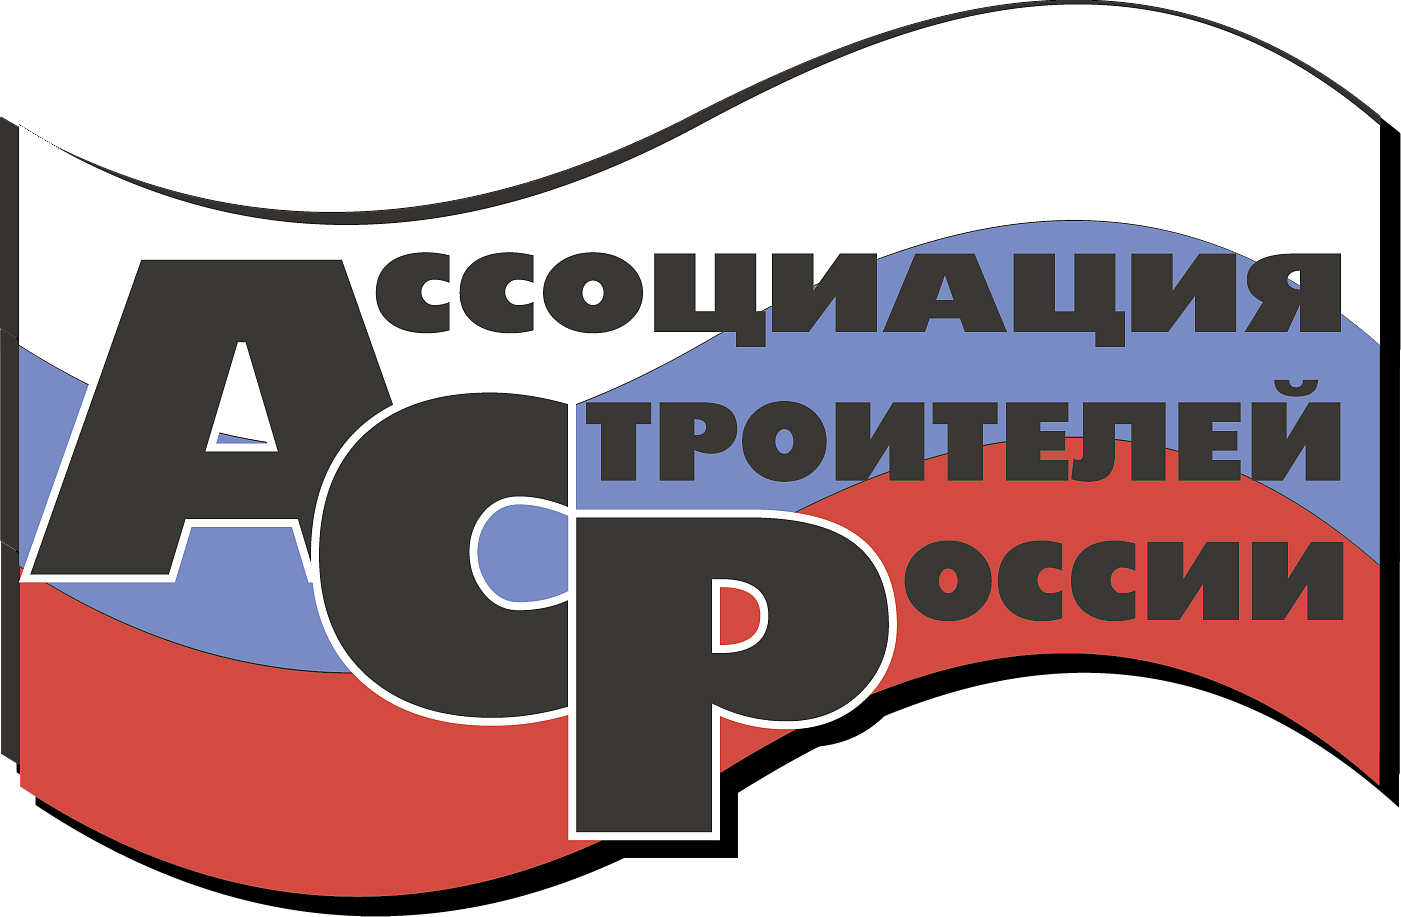 Ассоциация строителей России (АСР)